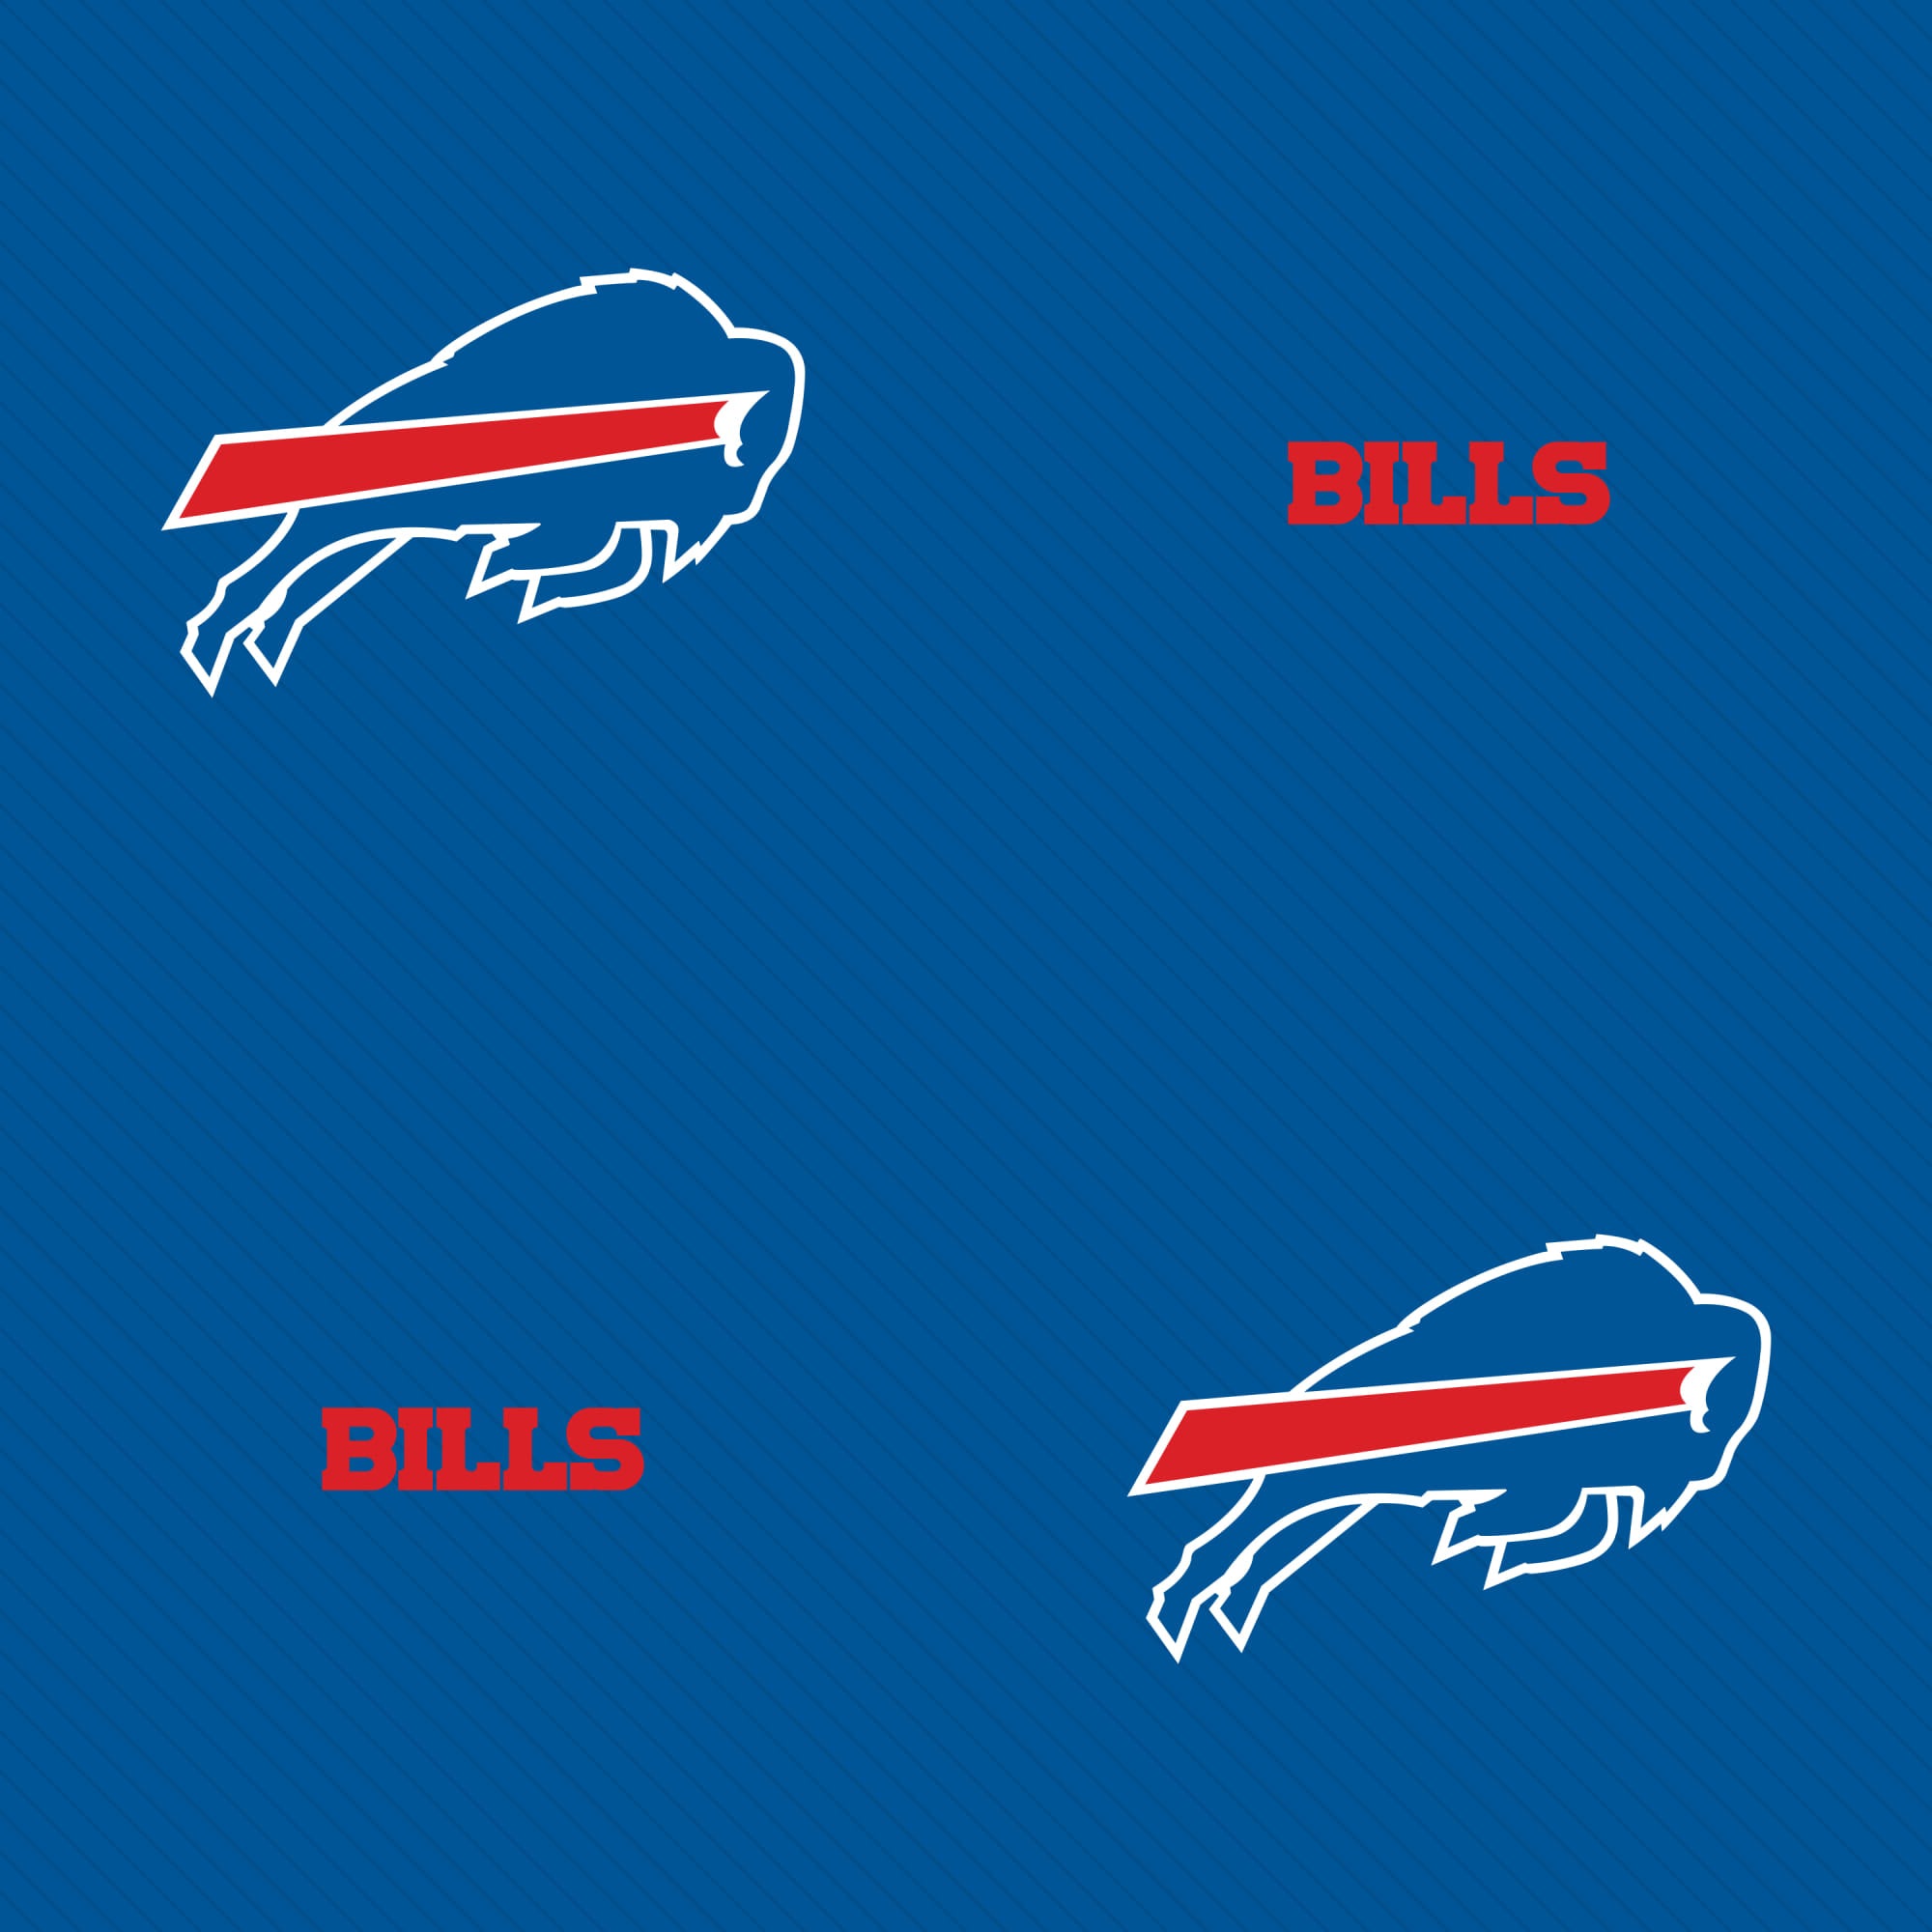 Wallpaper ID 397058  Sports Buffalo Bills Phone Wallpaper Emblem Logo  NFL 1080x1920 free download